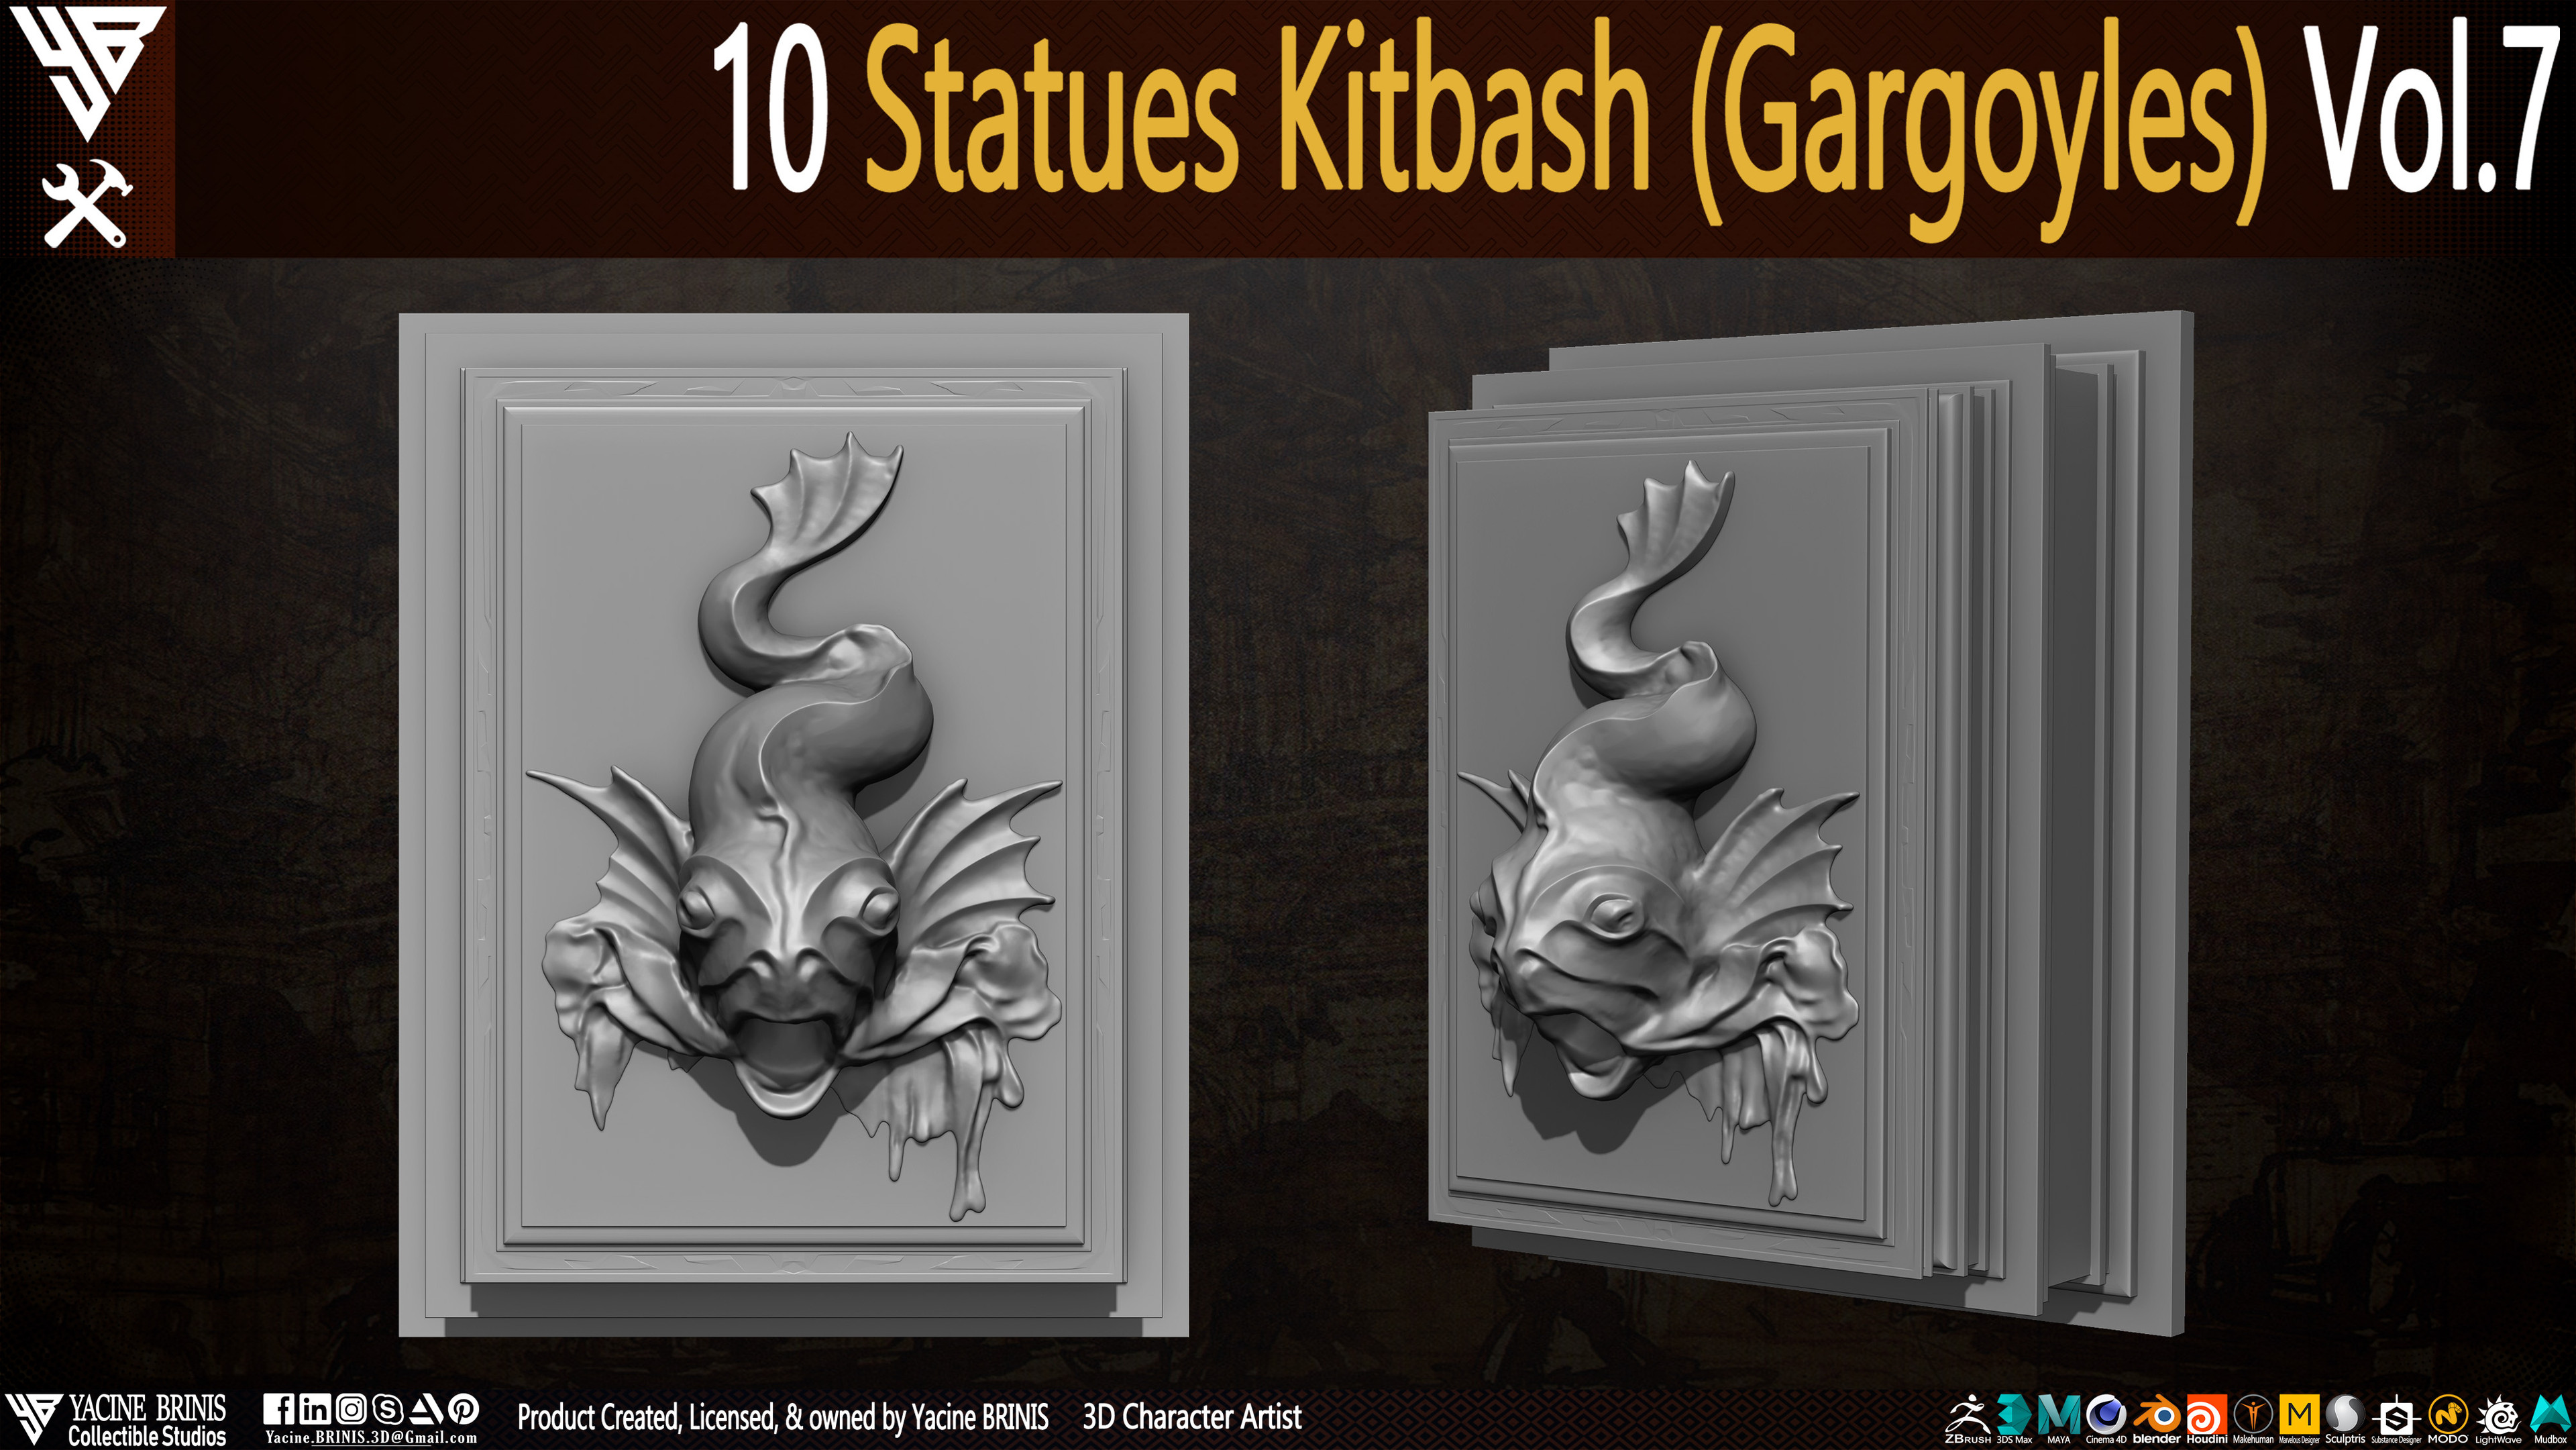 Statues Kitbash by yacine brinis Set 47